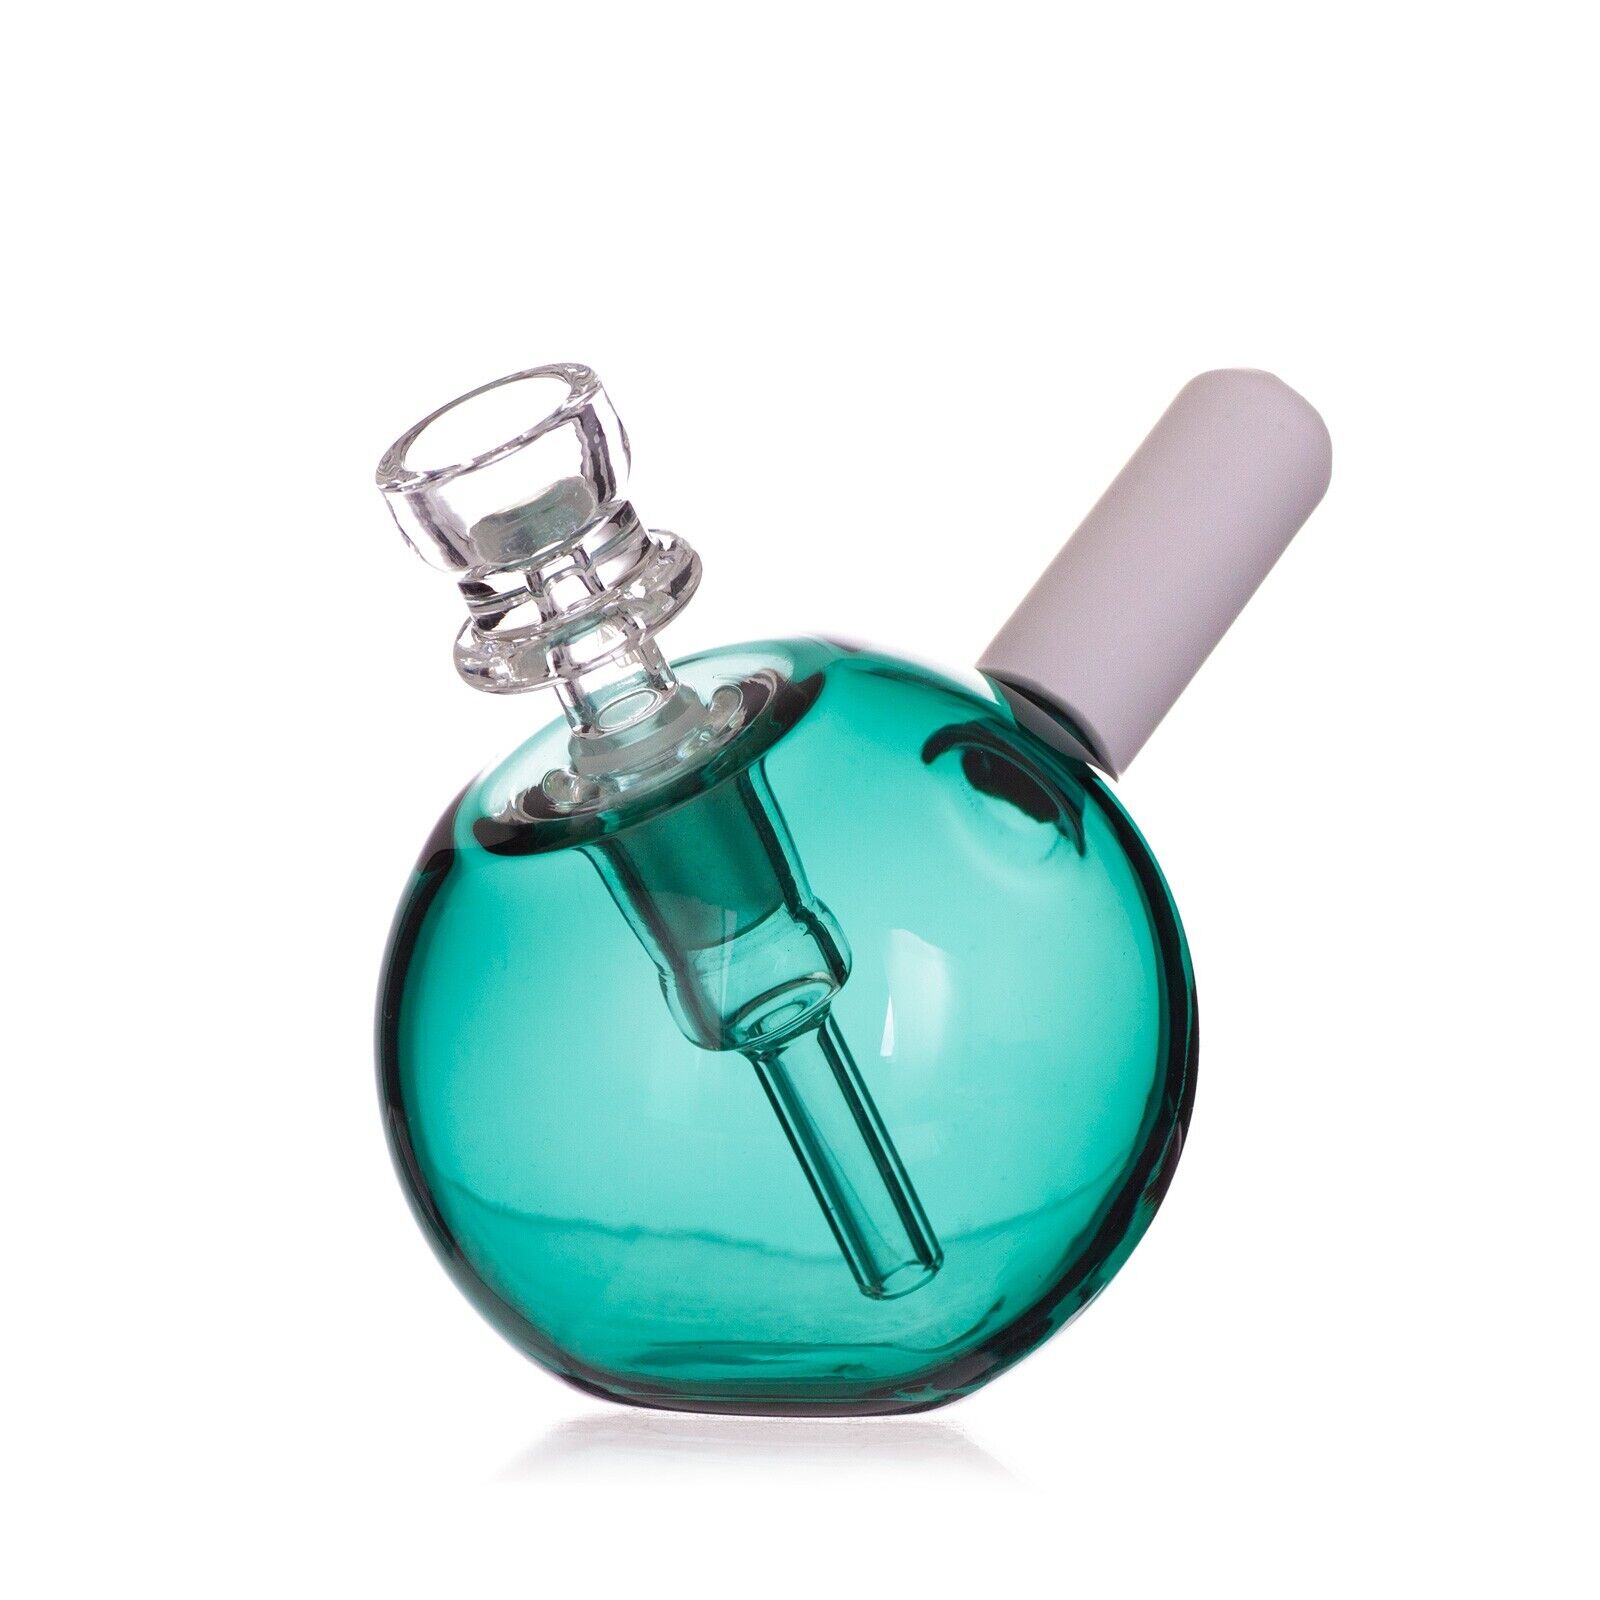 Premium Green Ball Design Glass Handmade Handpipe